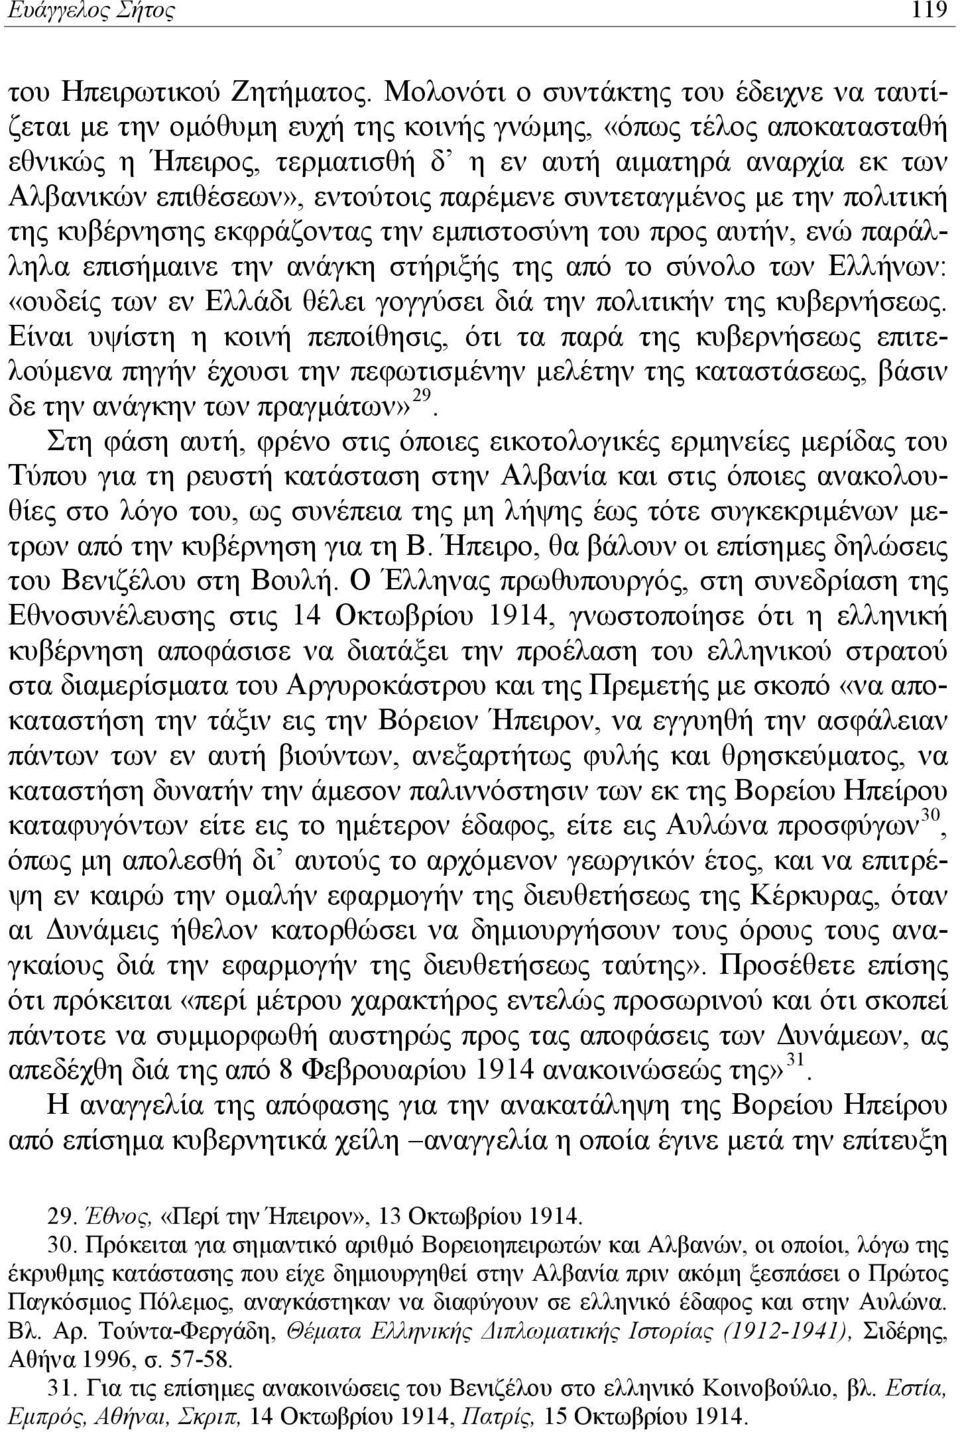 εντούτοις παρέμενε συντεταγμένος με την πολιτική της κυβέρνησης εκφράζοντας την εμπιστοσύνη του προς αυτήν, ενώ παράλληλα επισήμαινε την ανάγκη στήριξής της από το σύνολο των Ελλήνων: «ουδείς των εν